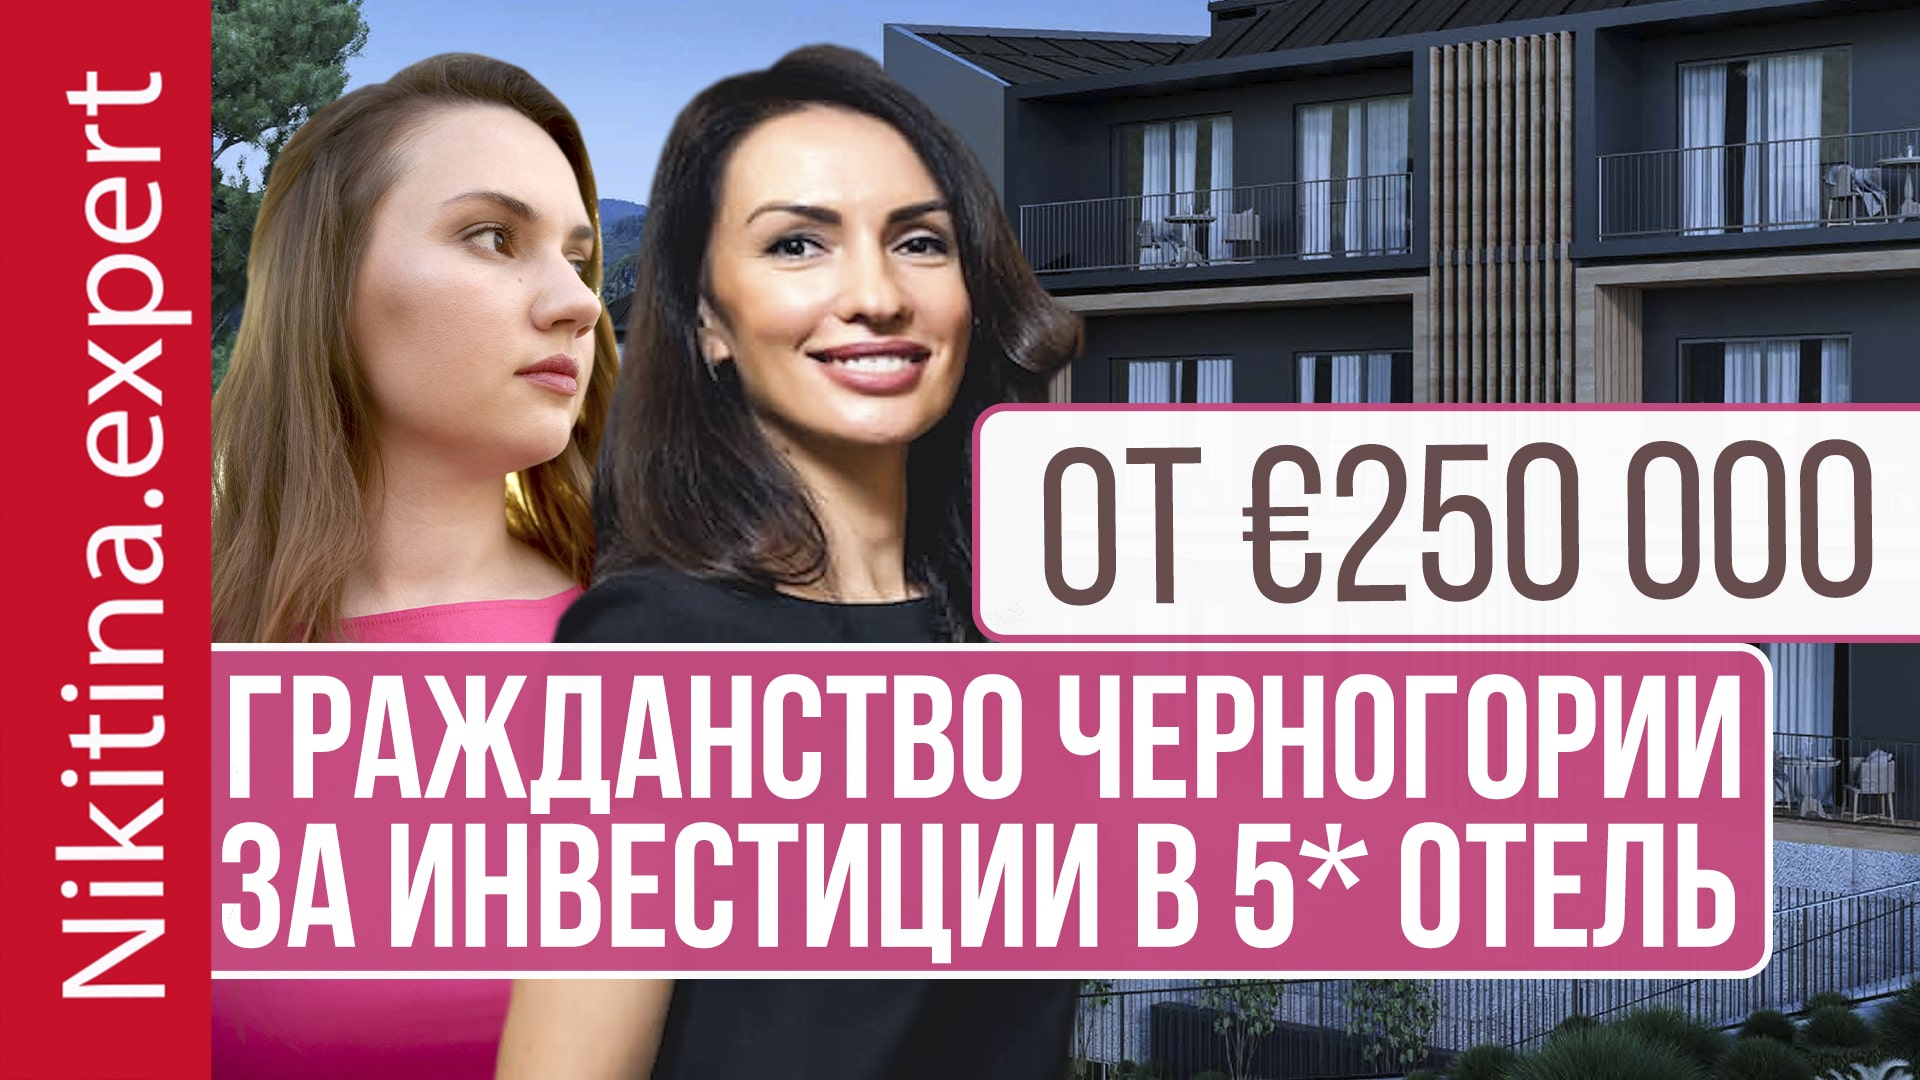 Гражданство Черногории за инвестиции в 5* отель от €250 000 | инвестиционное гражданство